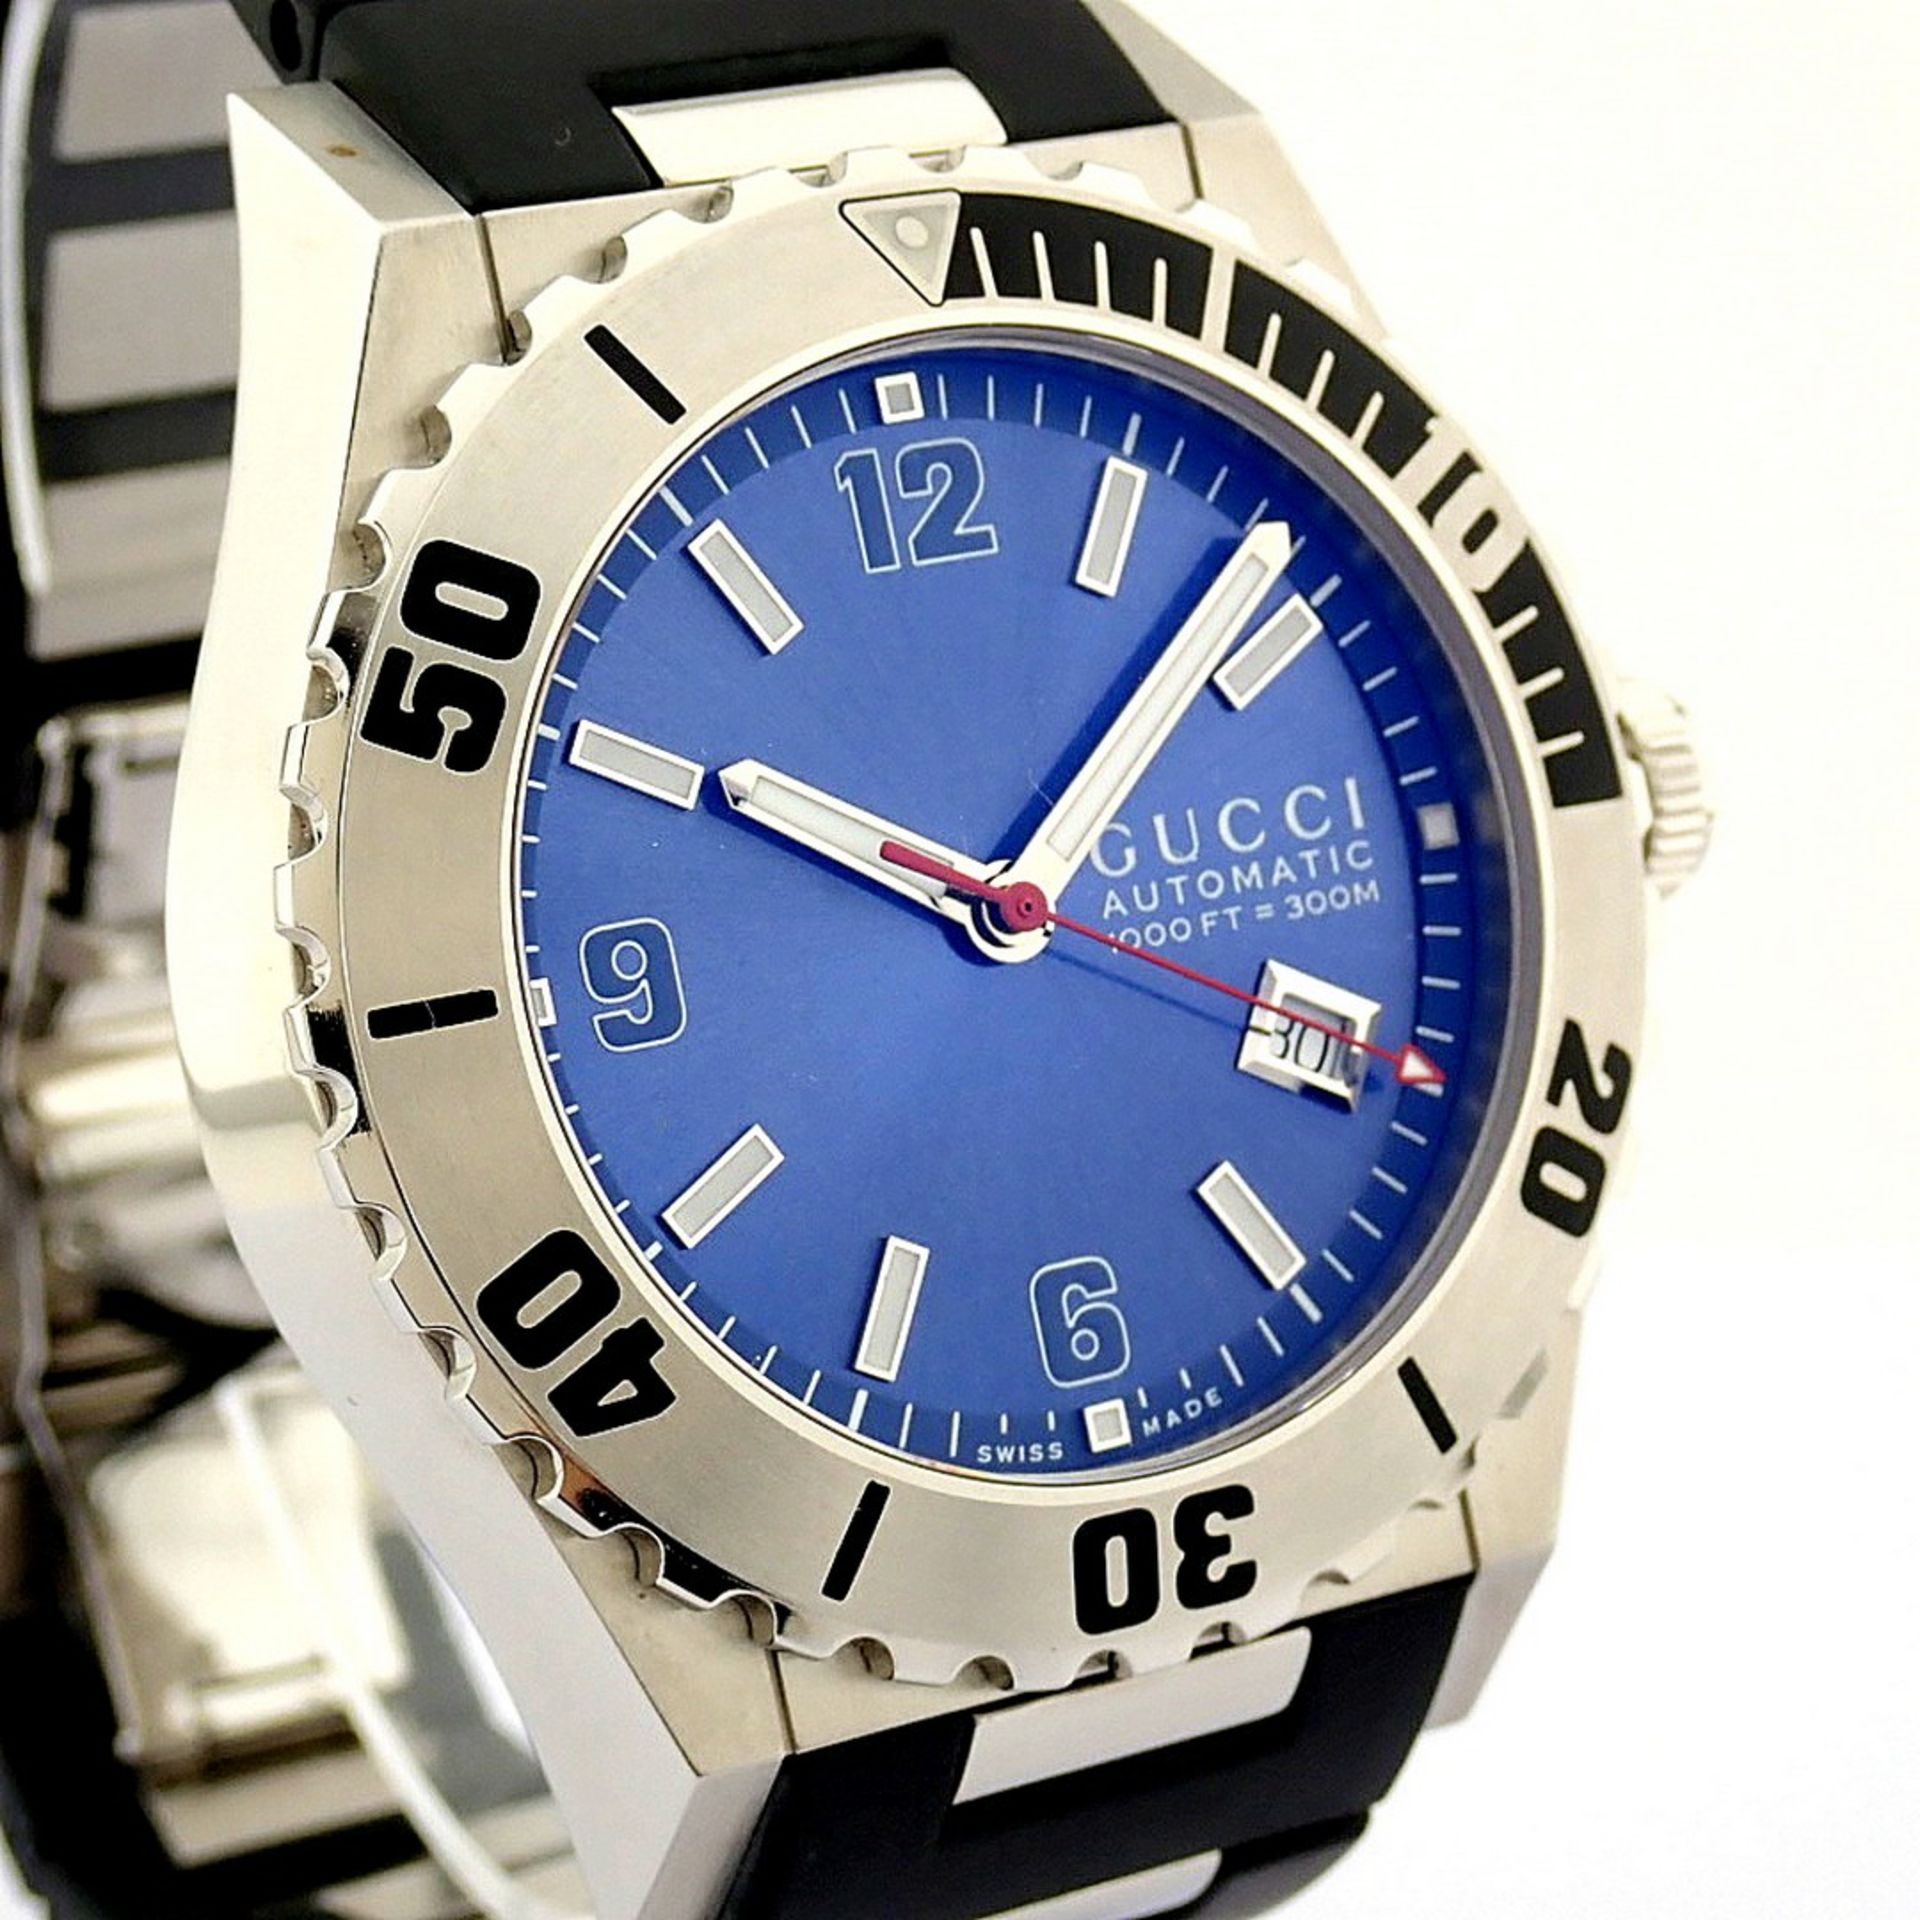 Gucci / Pantheon 115.2 (Brand New) - Gentlmen's Steel Wrist Watch